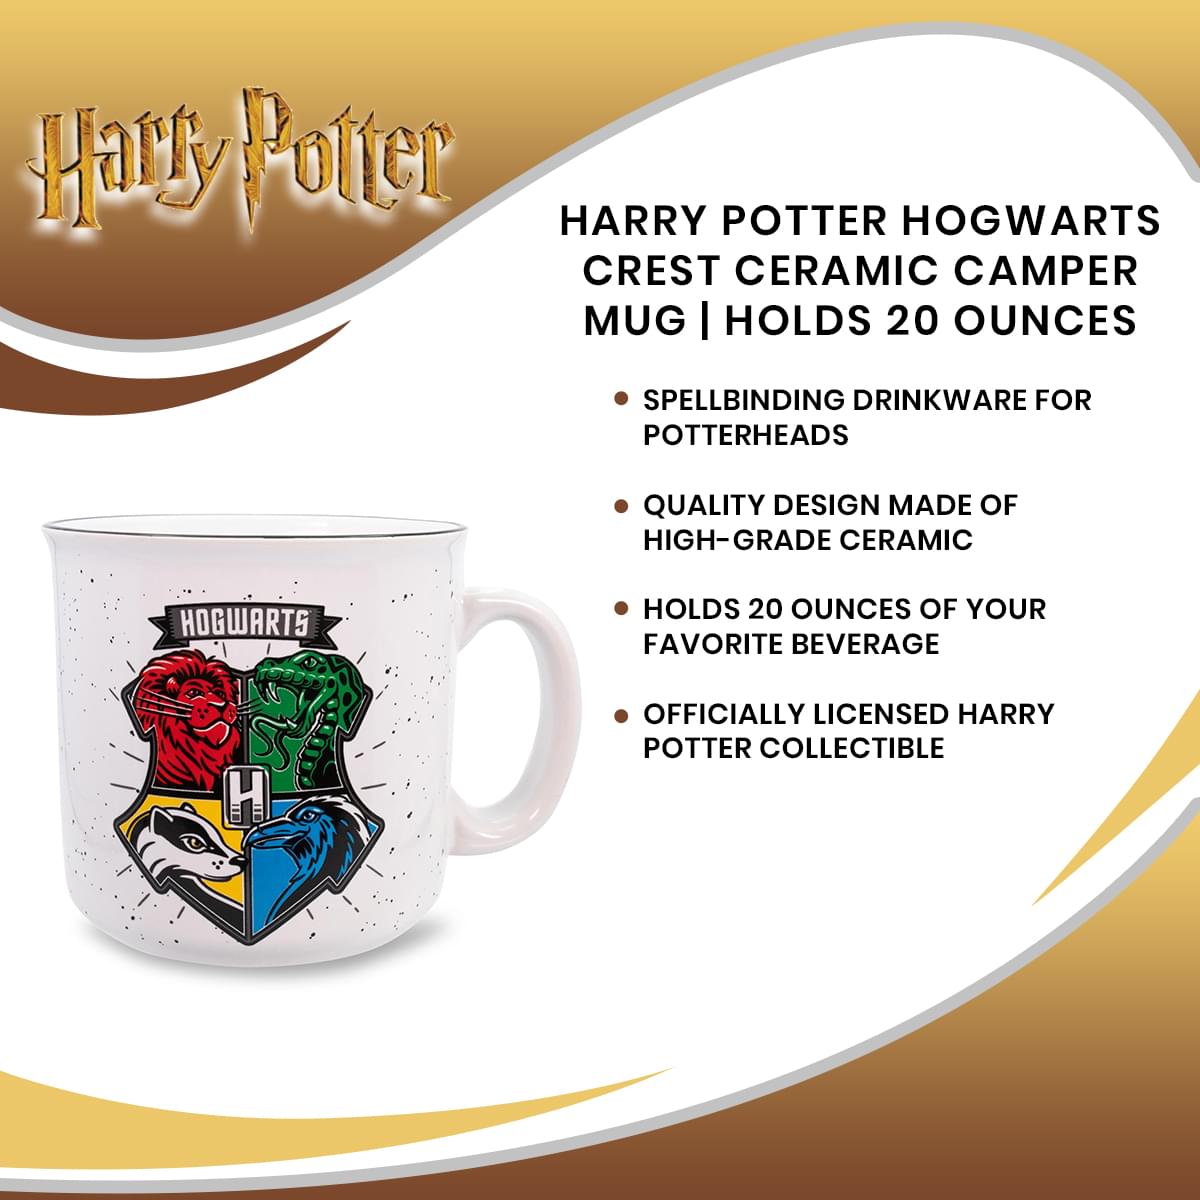 Harry Potter Hogwarts Crest Ceramic Camper Mug | Holds 20 Ounces